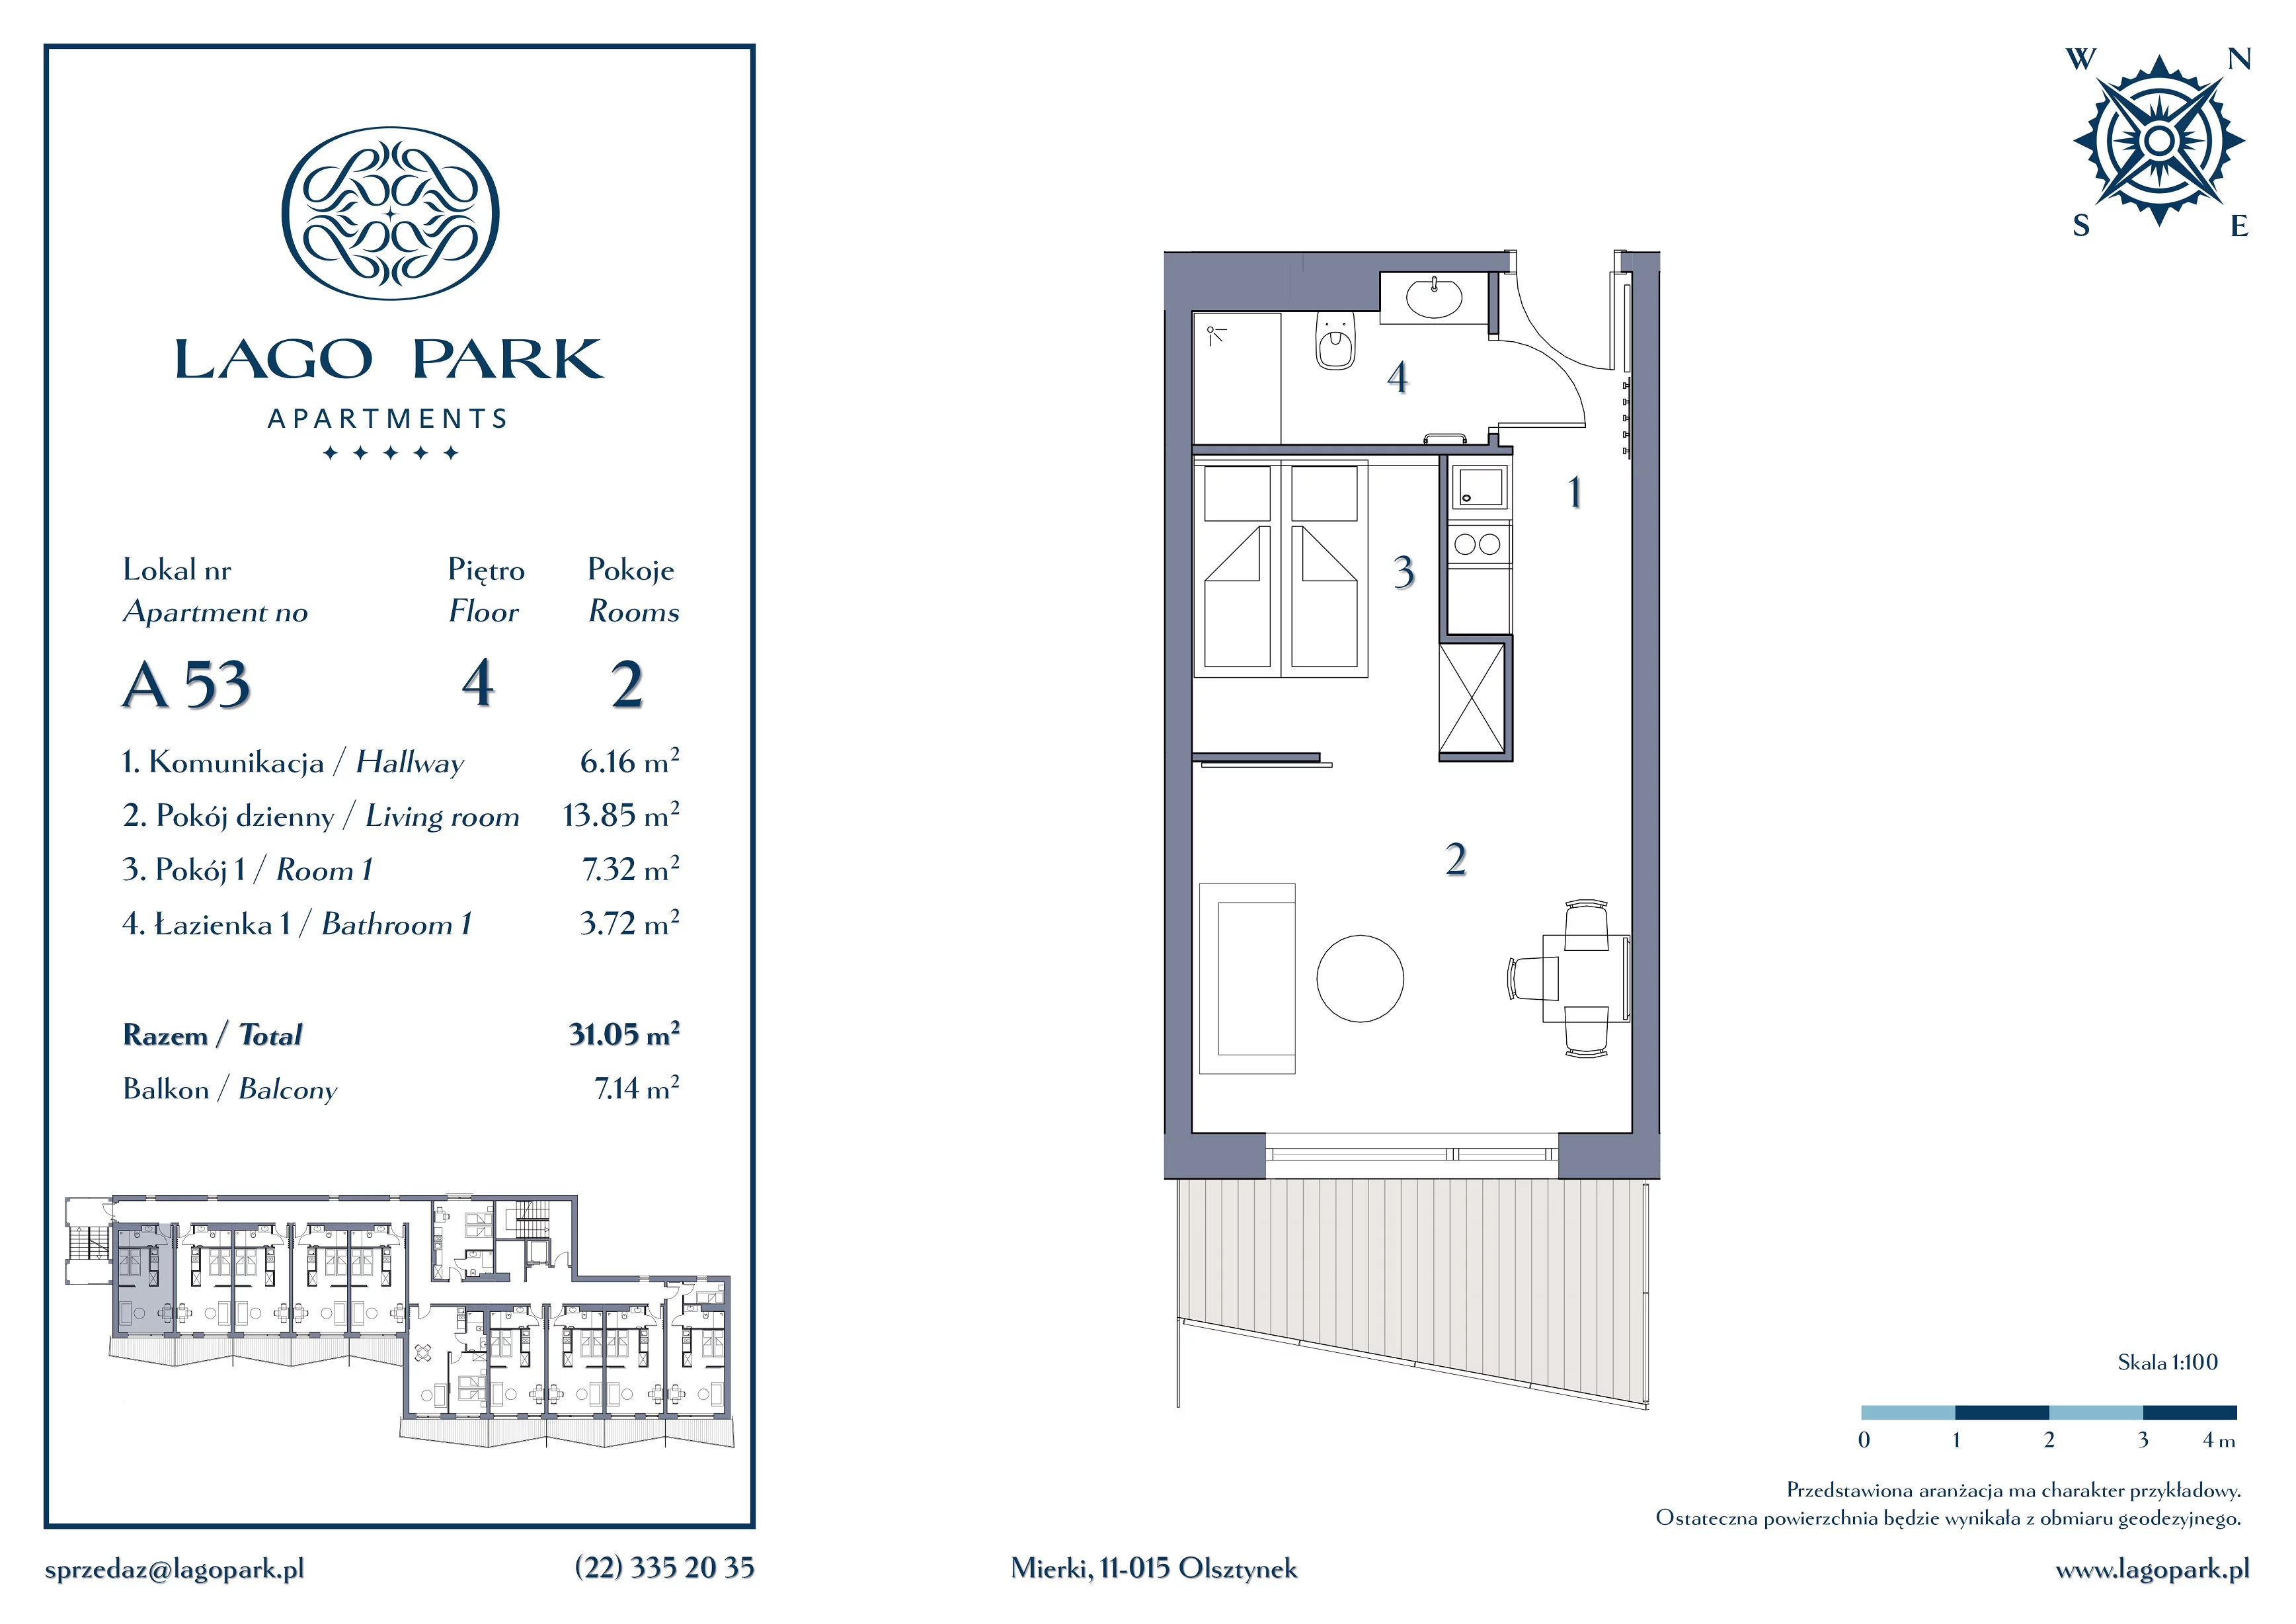 Apartament inwestycyjny 31,05 m², piętro 4, oferta nr A53, Lago Park Apartments by Aries, Mierki, Kołatek 2